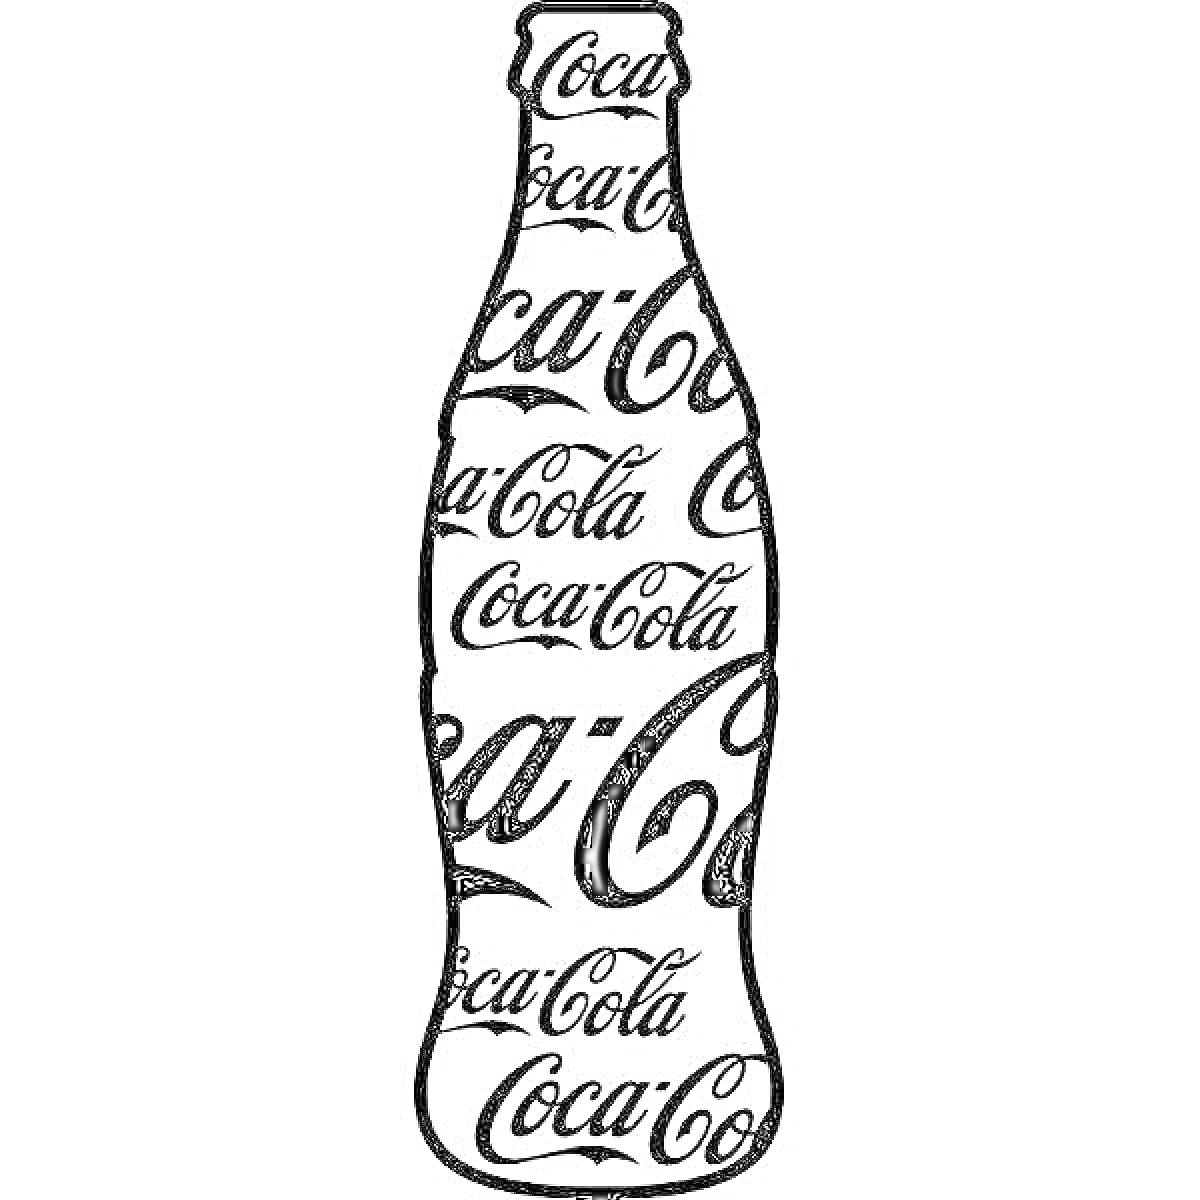 Контур бутылки Кока-колы с надписью 